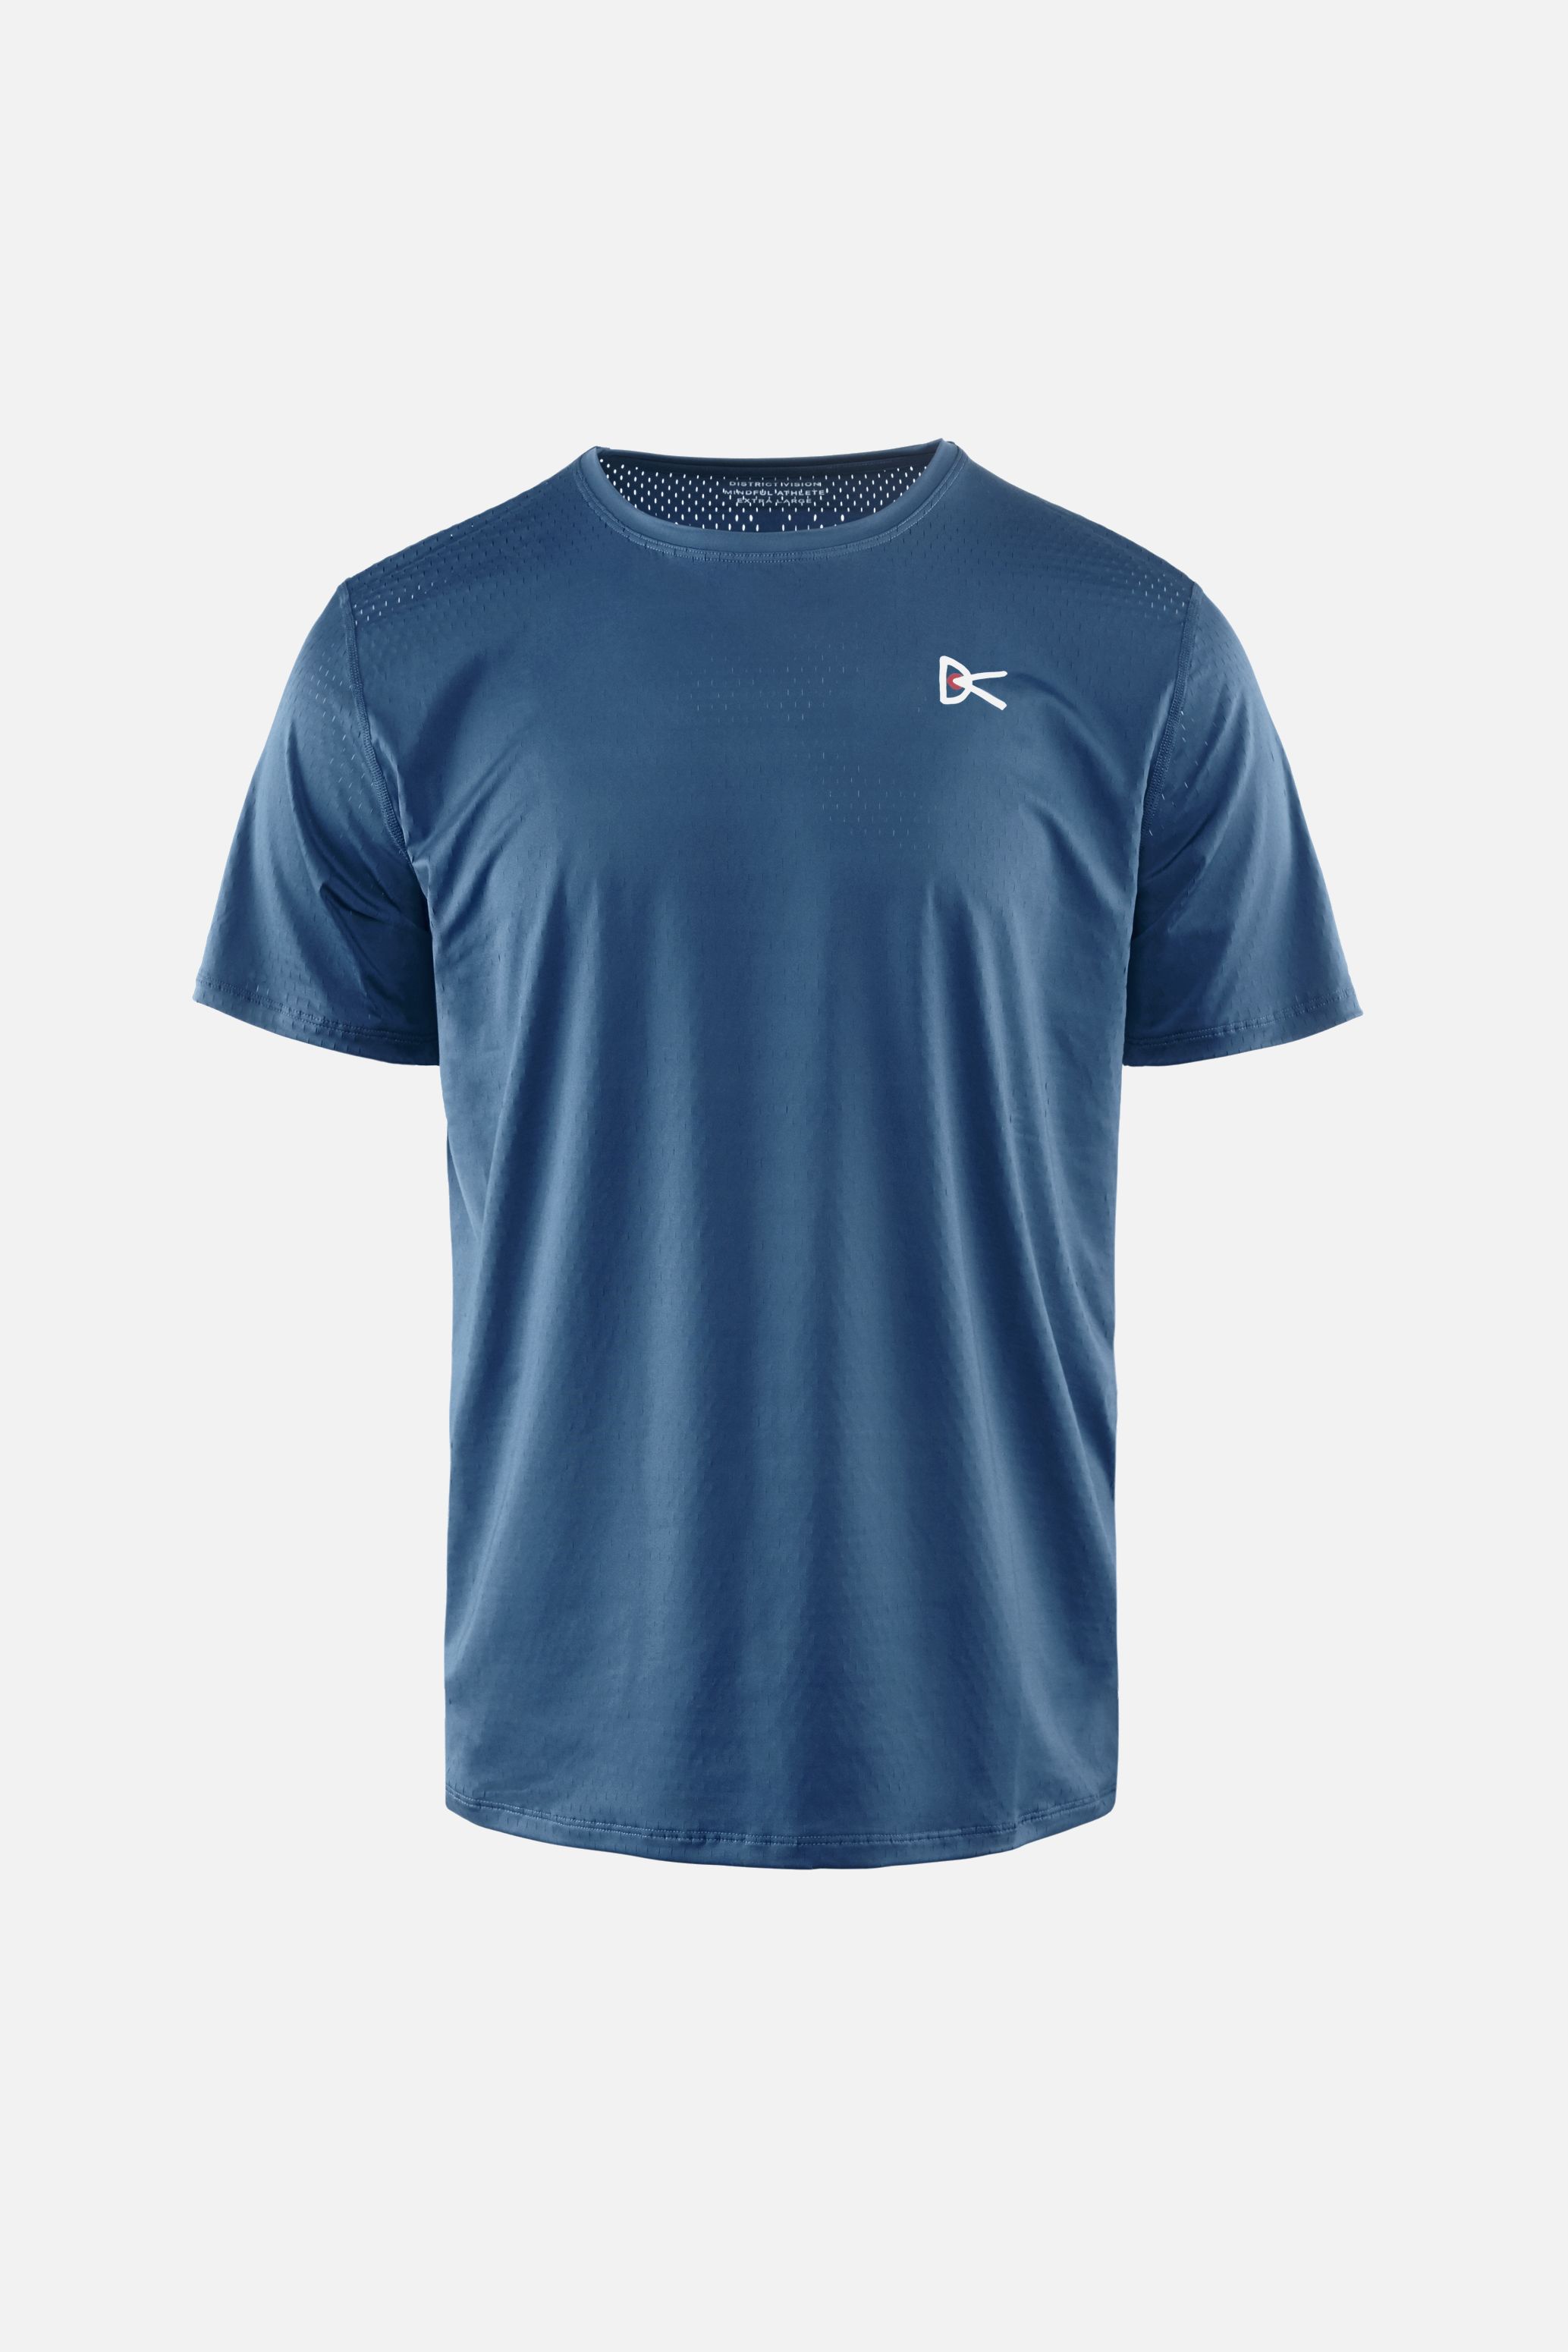 Air–Wear Short Sleeve T-Shirt, Blue